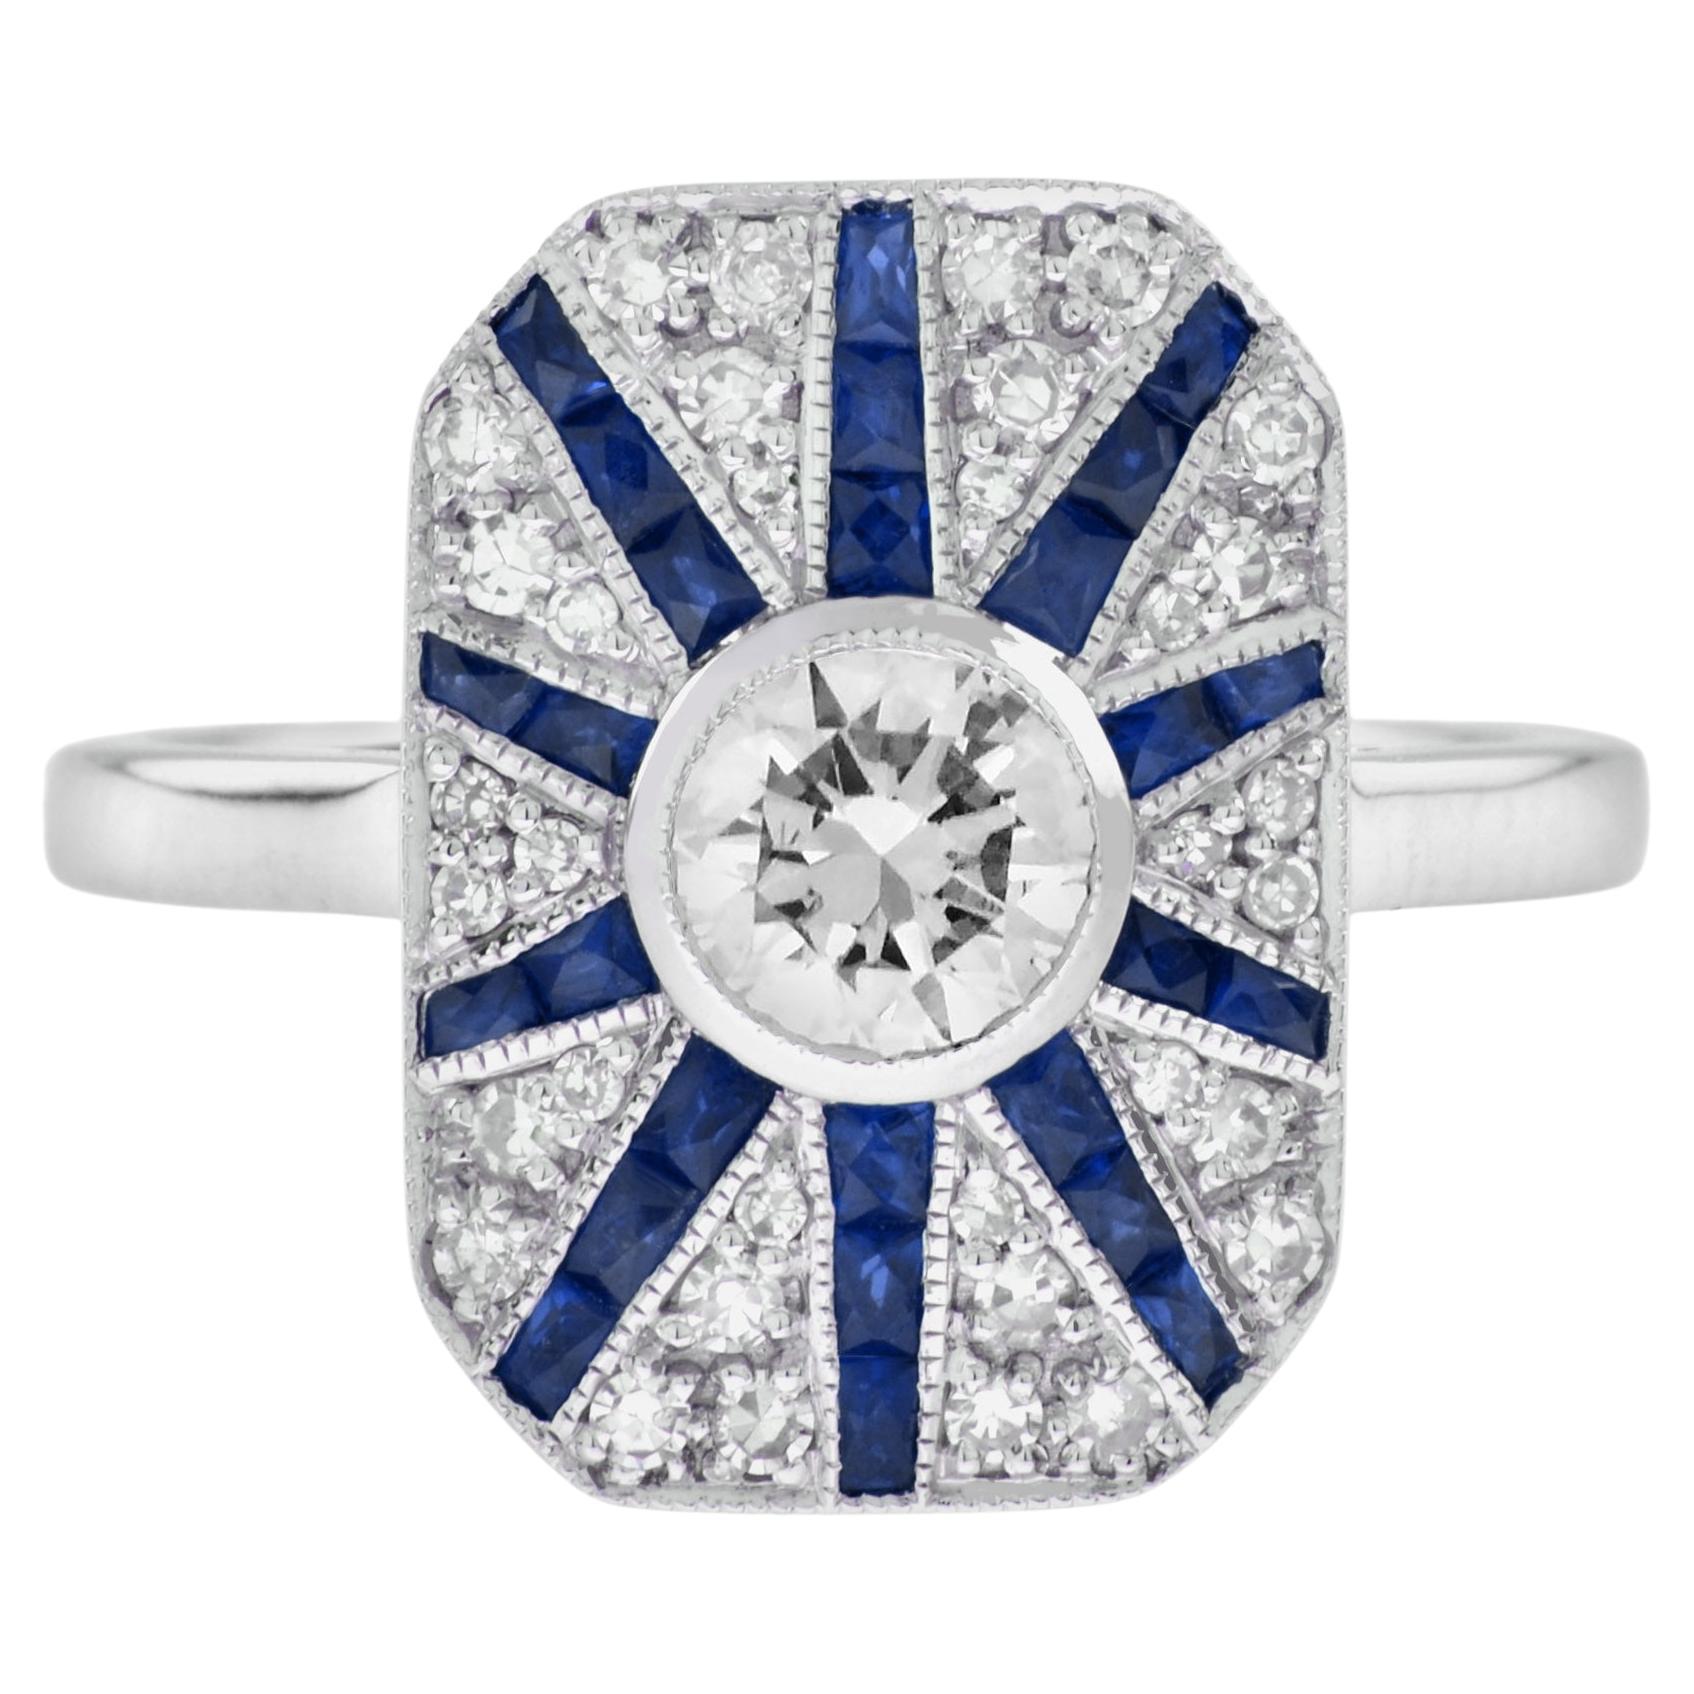 Bague halo de style Art déco en or blanc 18 carats avec diamants et saphirs bleus